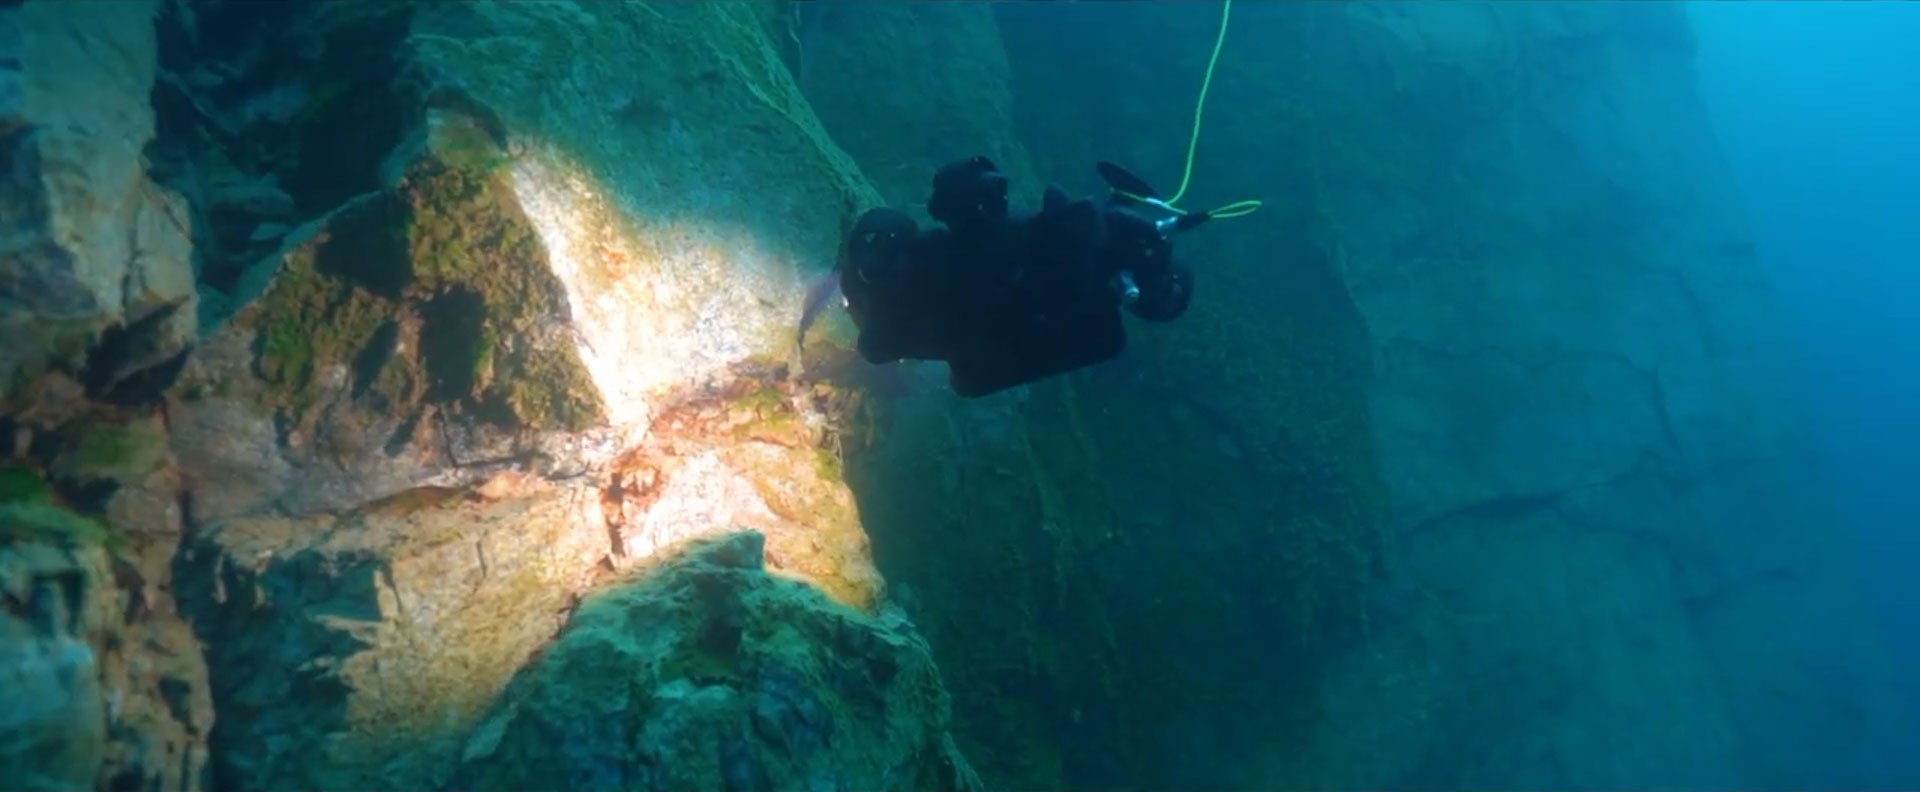 fifish-v6-plus-underwater-footage.jpg